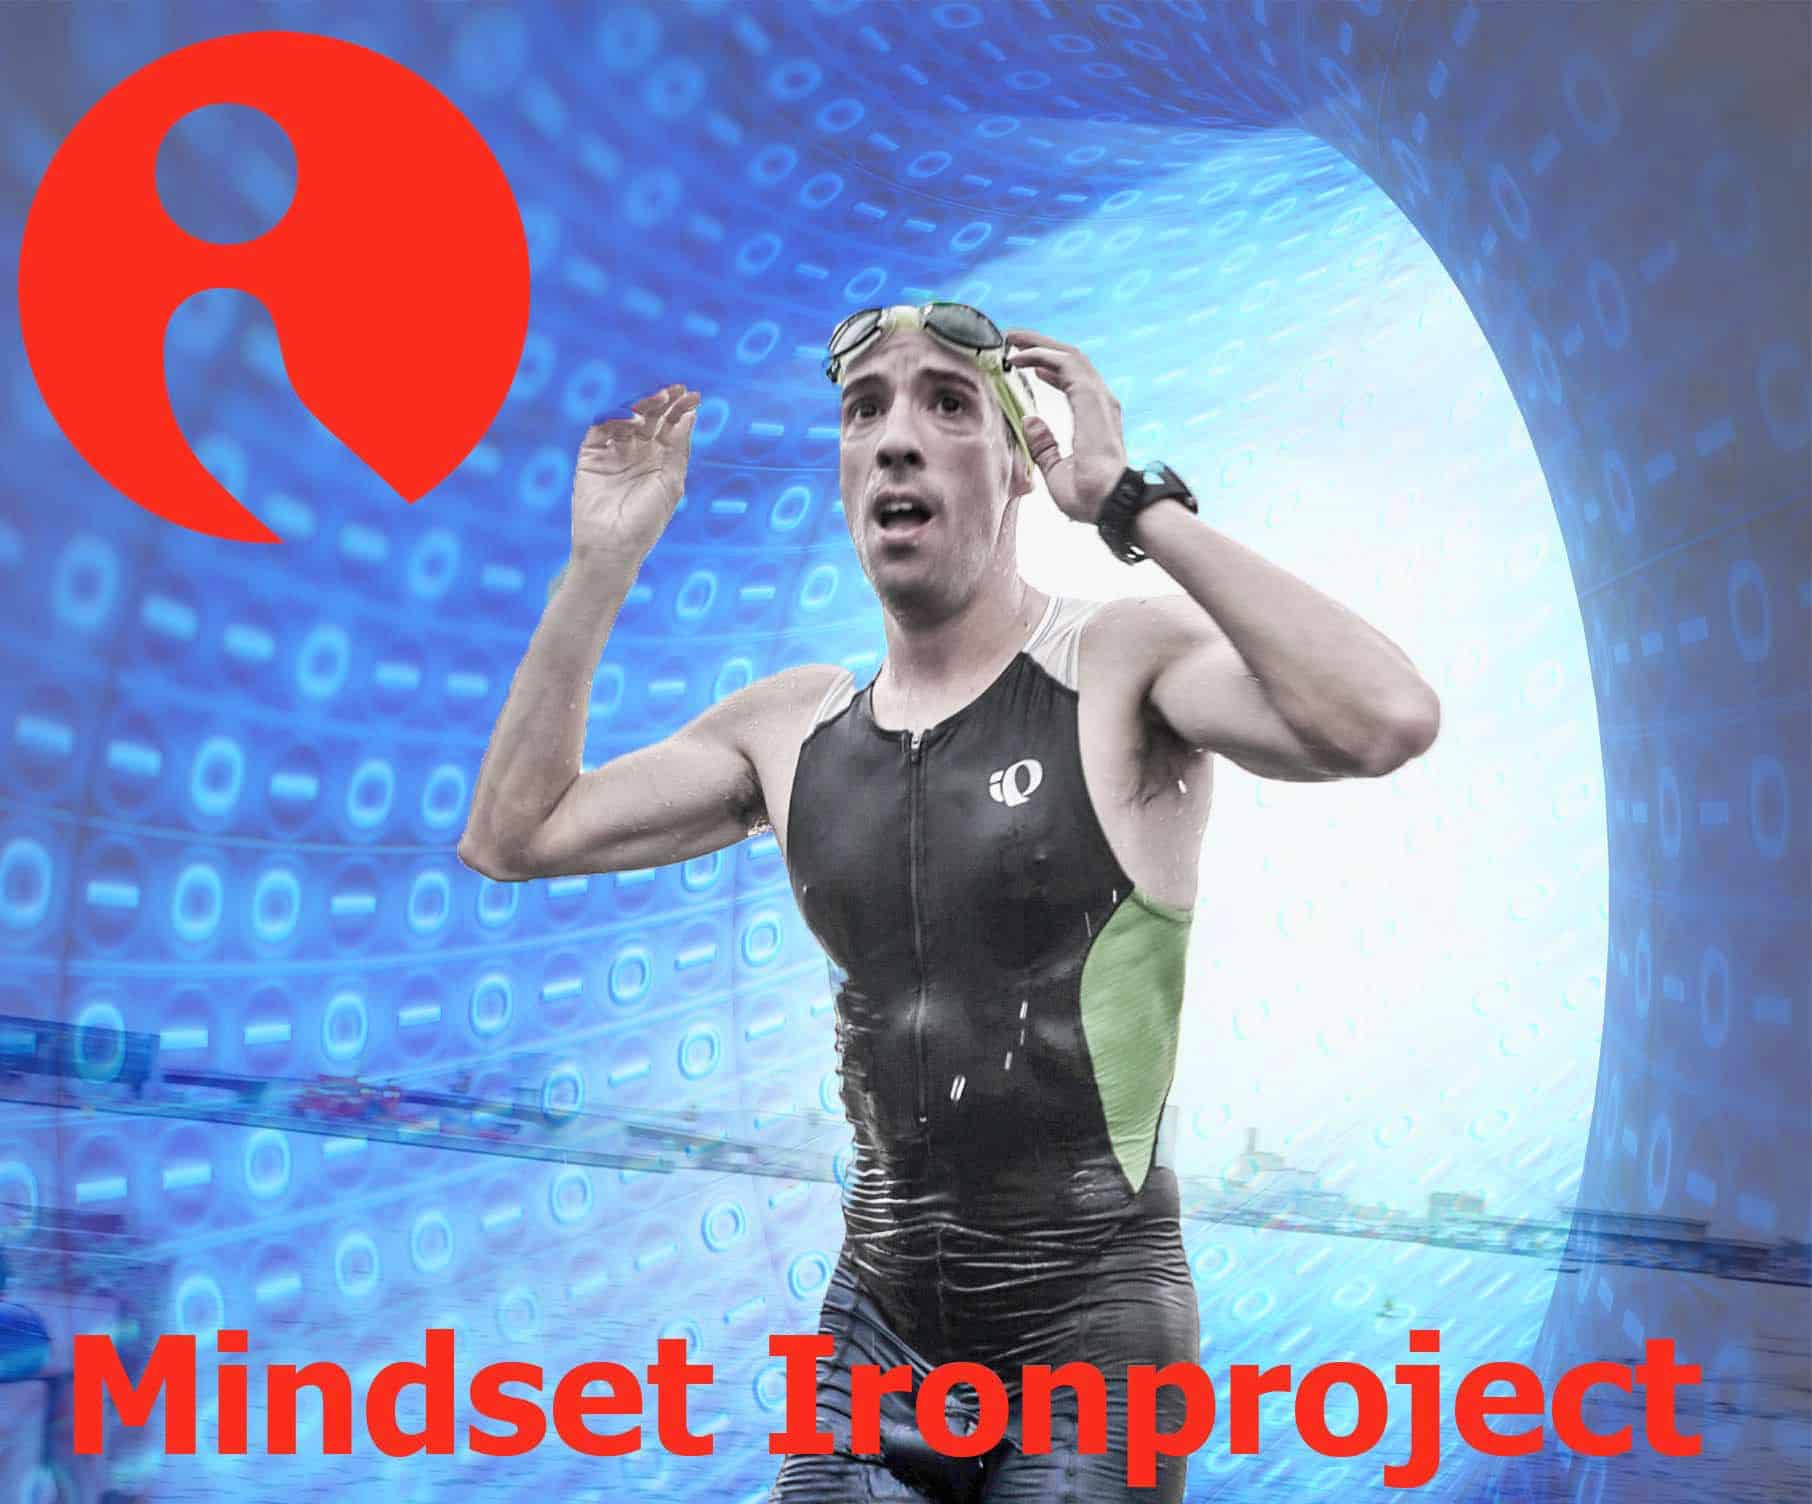 Escuela de la Memoria | [Mindset Ironproject] Mente y cuerpo al límite: Mindset Ironproject